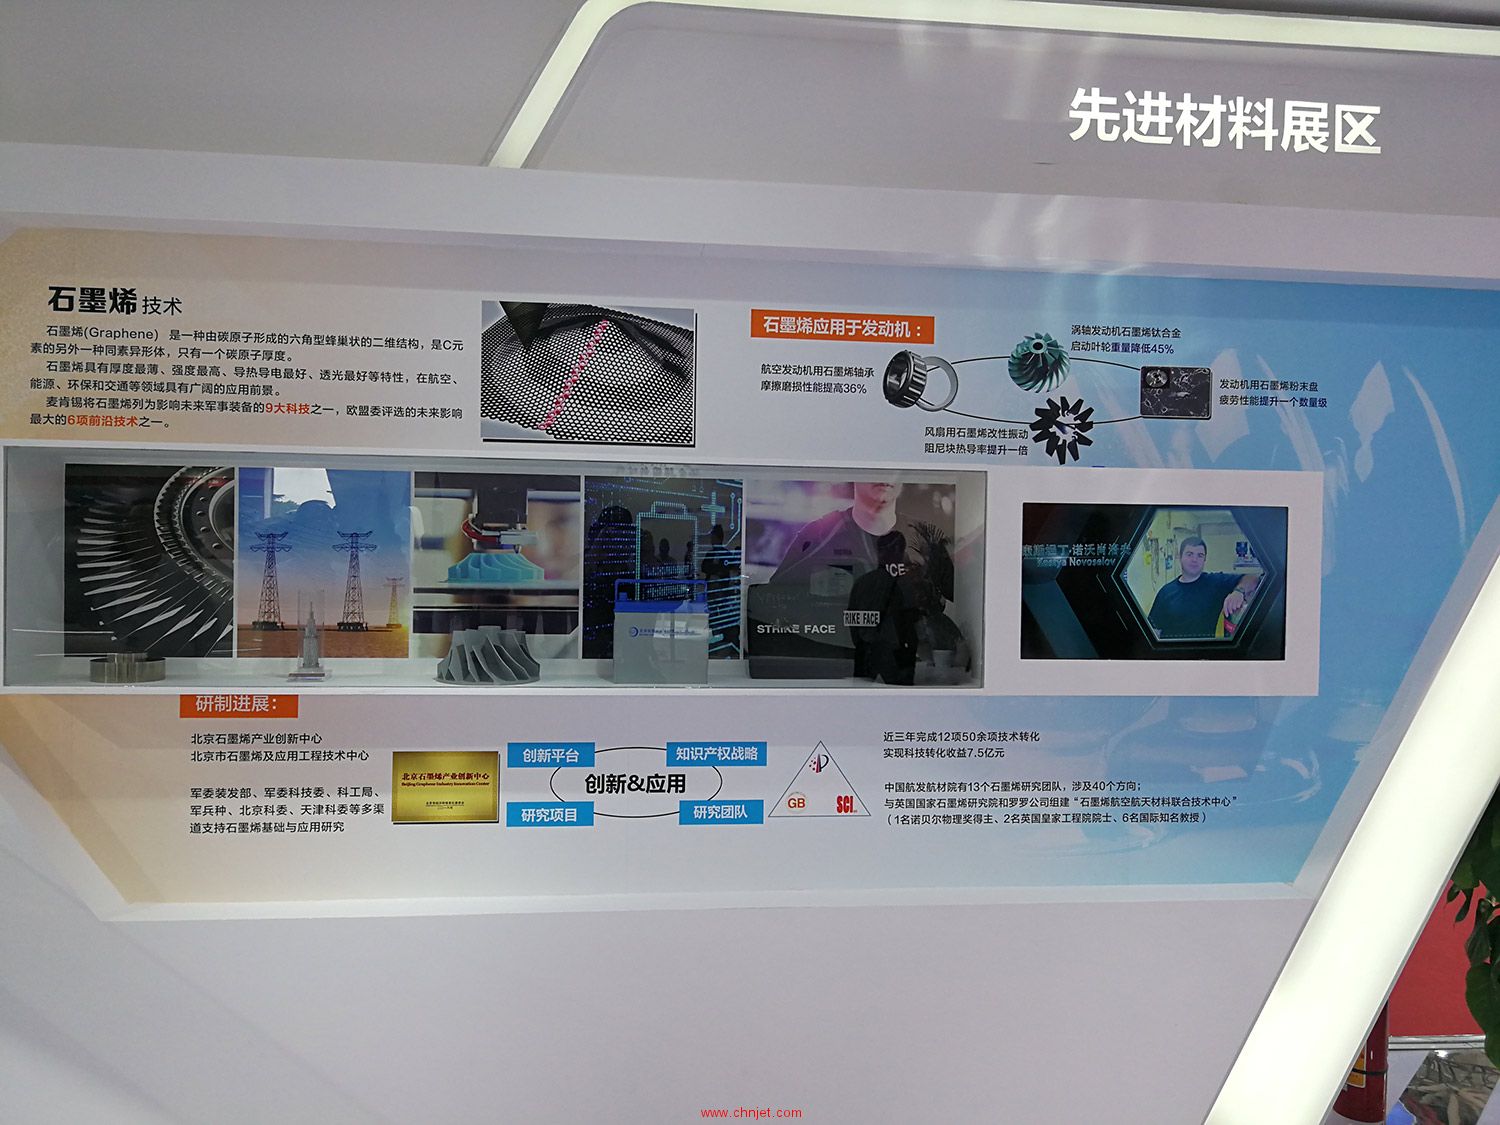 第十二届中国国际航空航天博览会